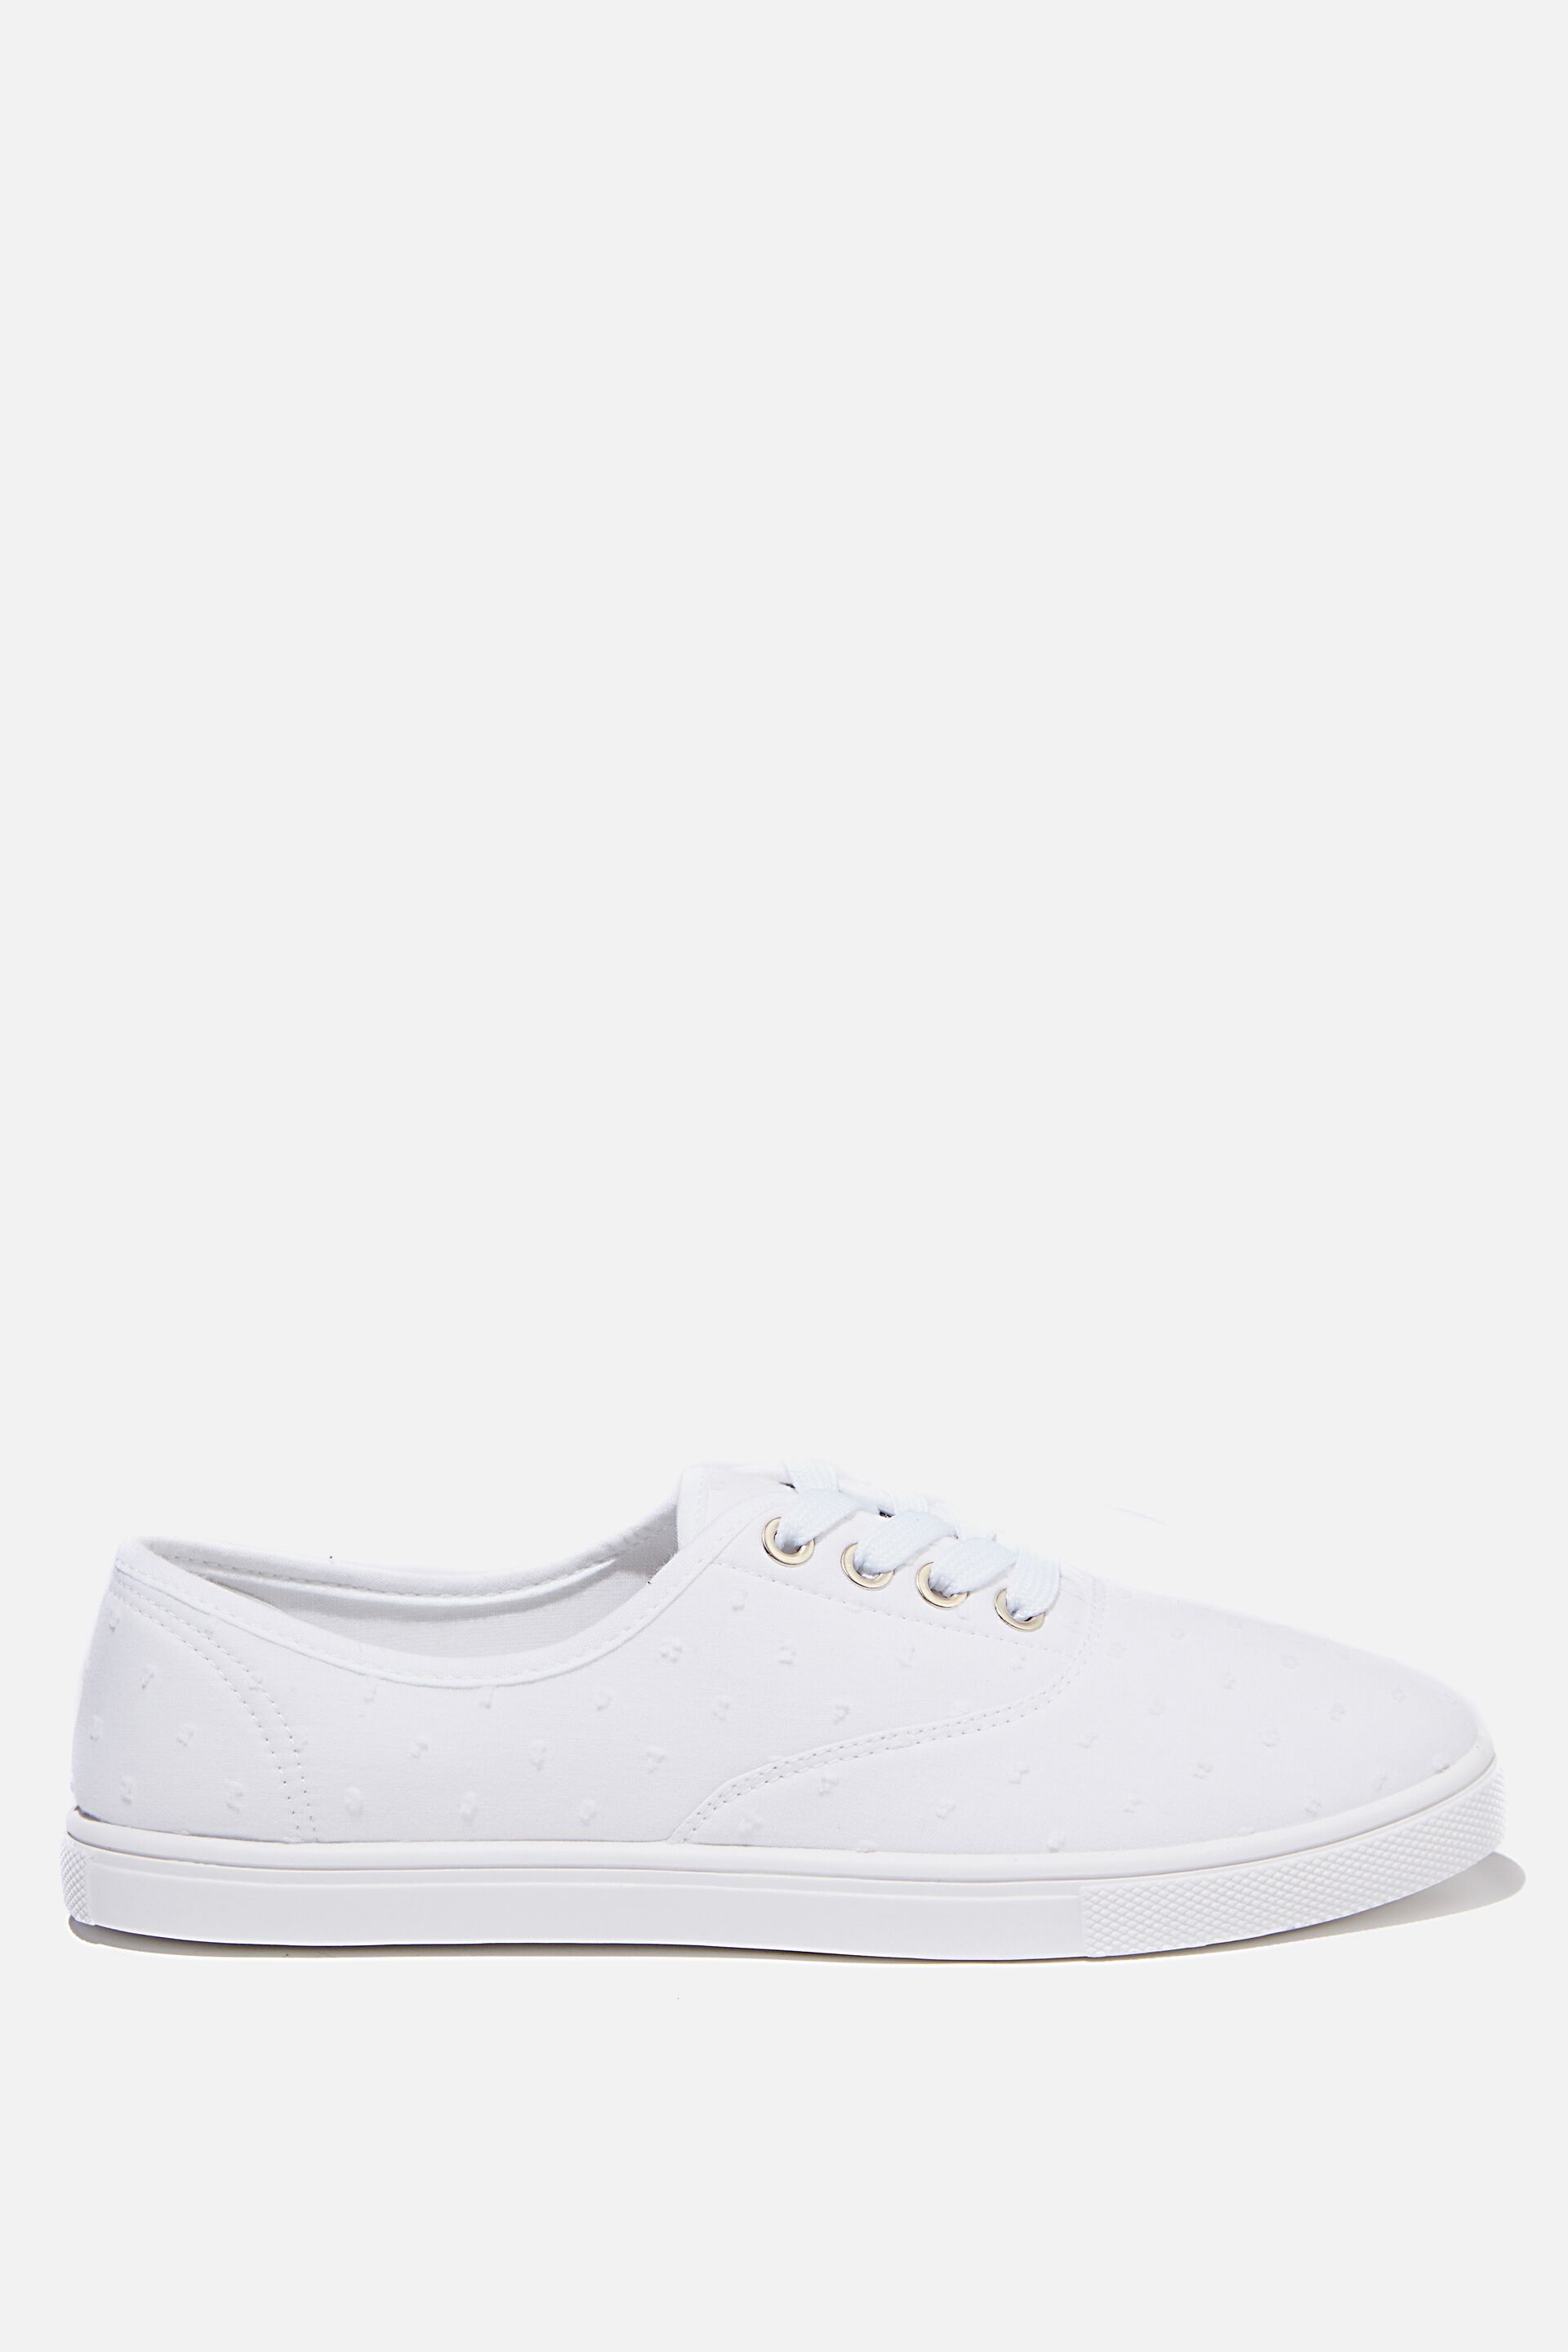 rubi white sneakers